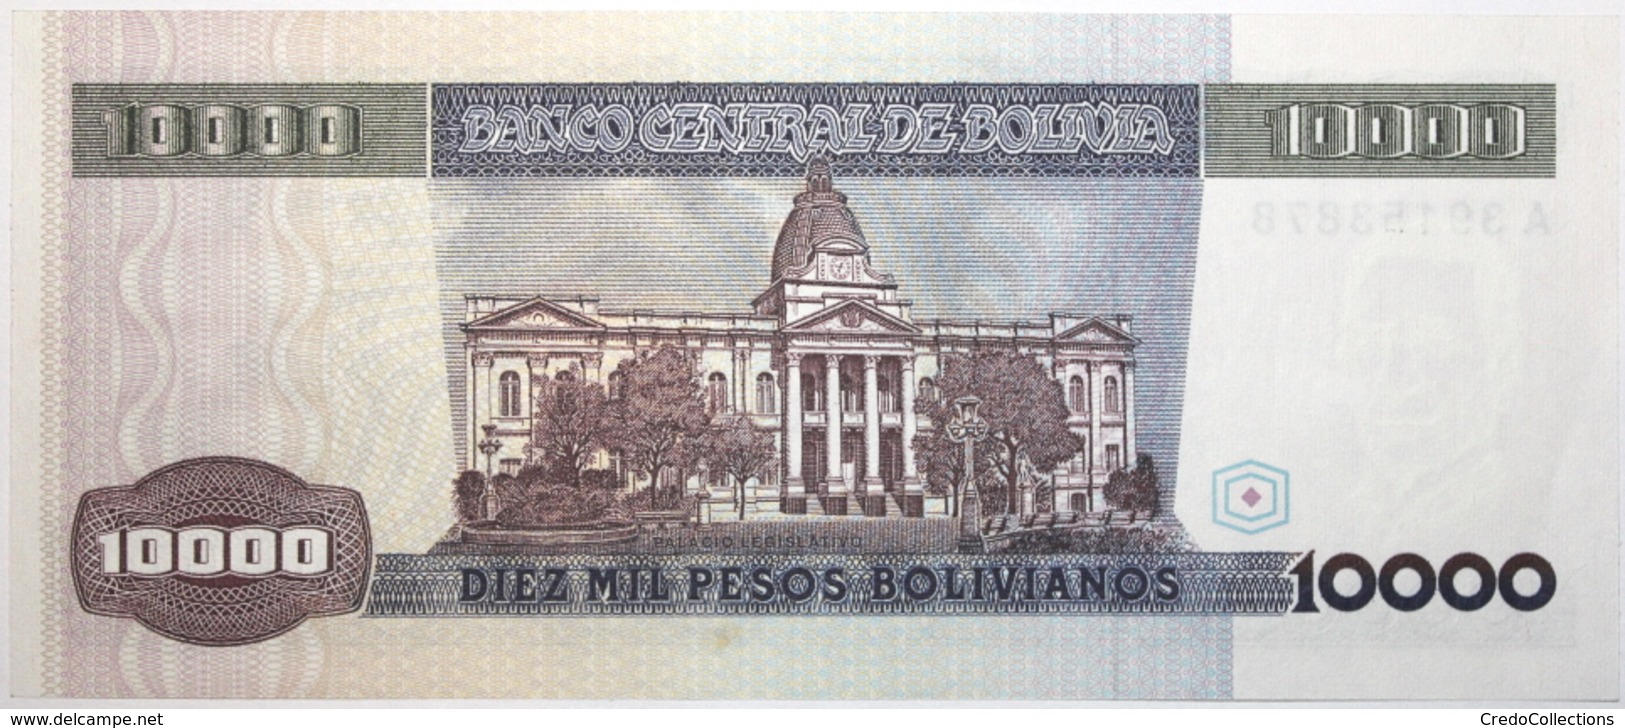 Bolivie - 10000 Pesos Bolivianos - 1984 - PICK 169a - SPL - Bolivië